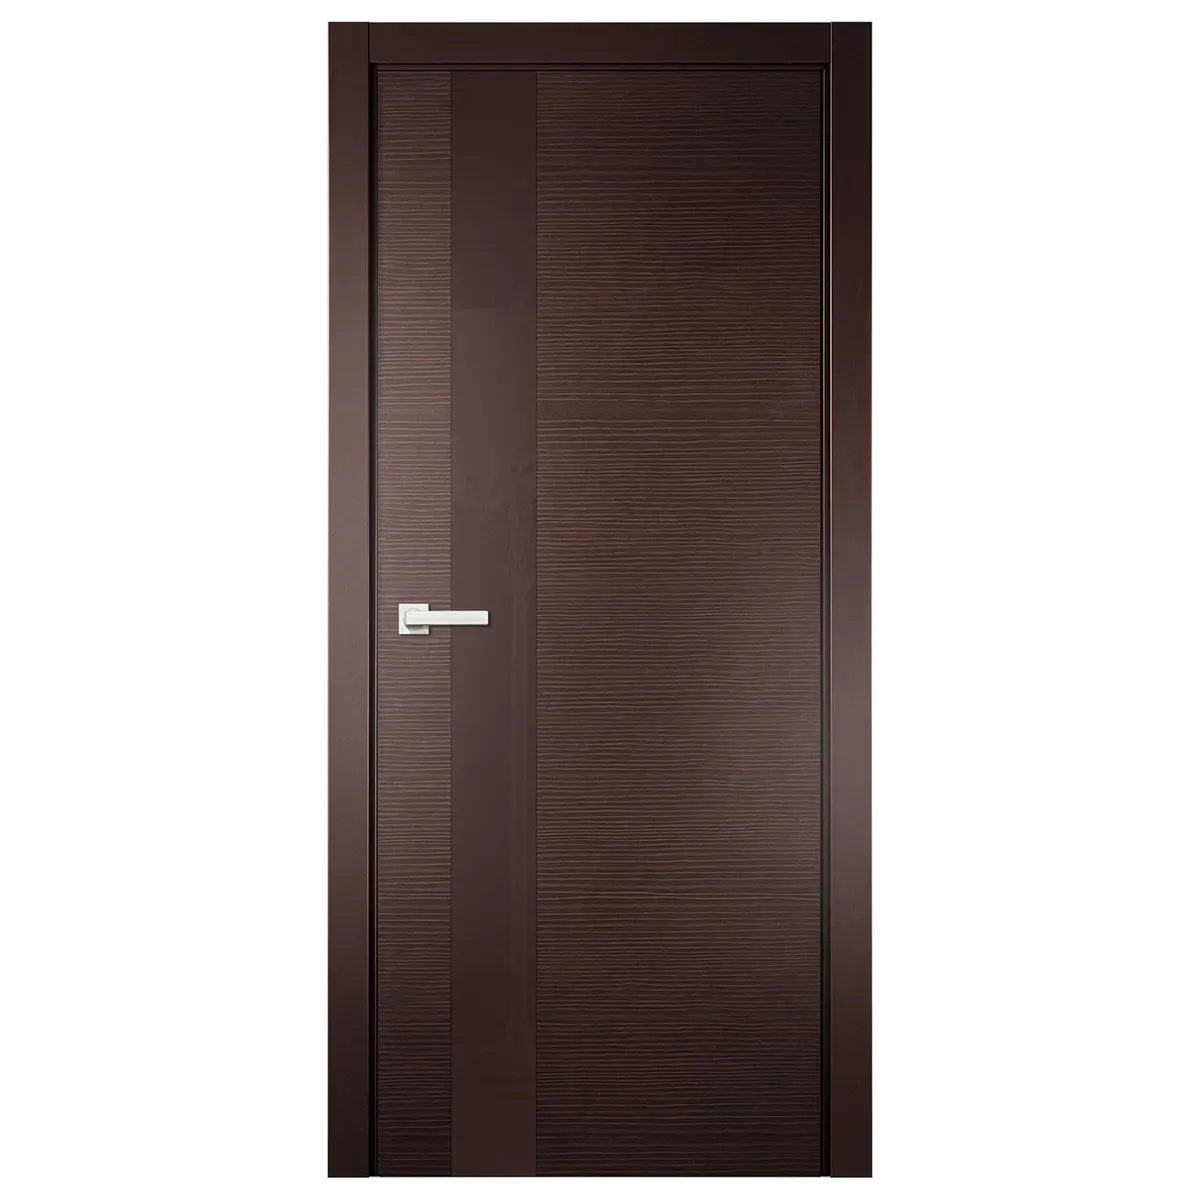 Ikealuminum 2023 nfrc solid wooden doors design catalogue custom wood doors solid interior solid wood doors for houses